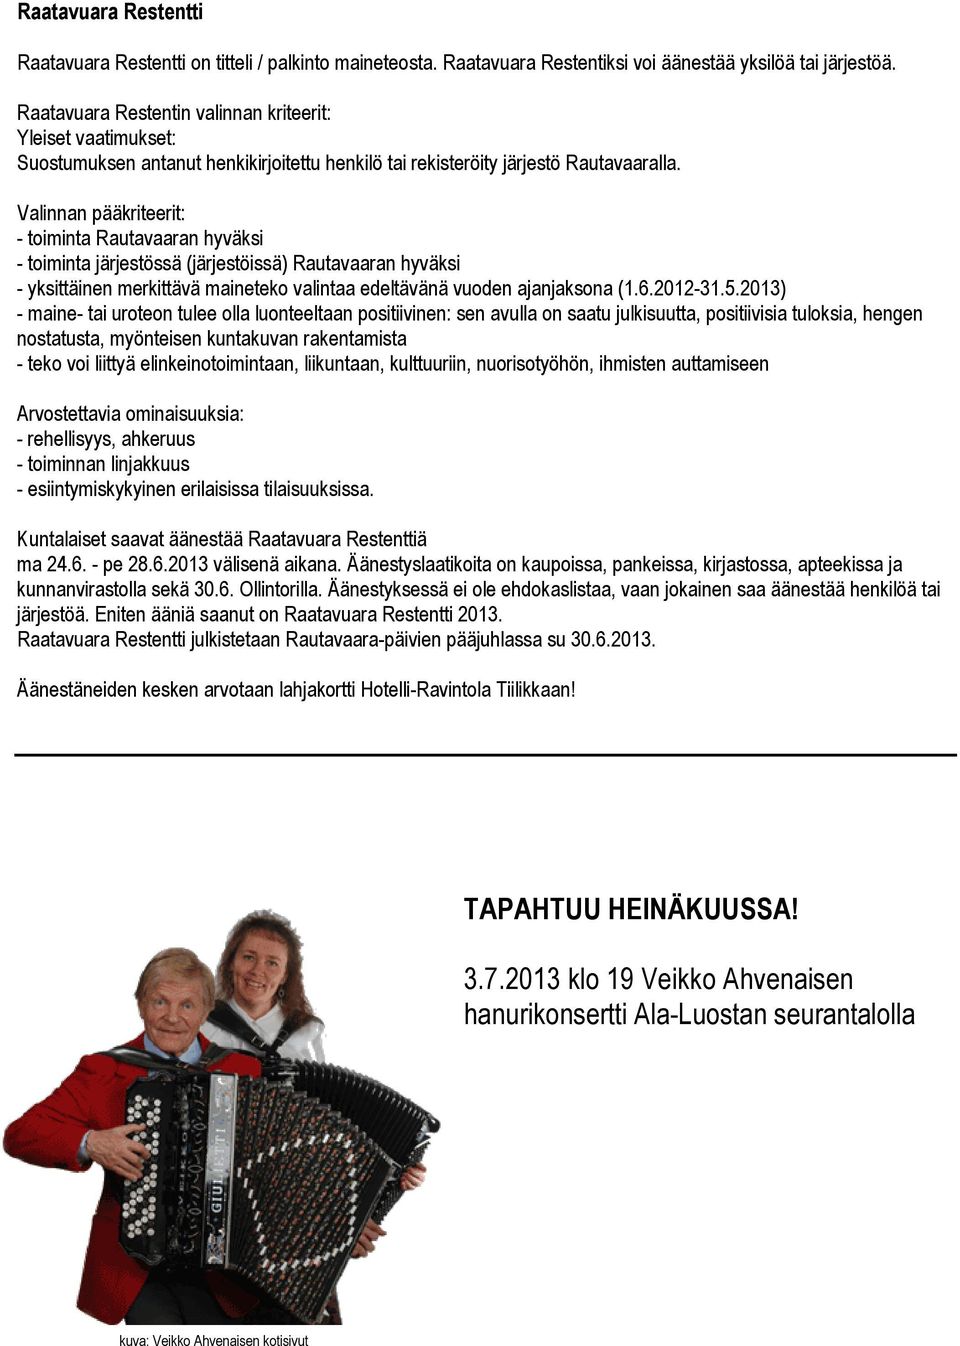 Valinnan pääkriteerit: - toiminta Rautavaaran hyväksi - toiminta järjestössä (järjestöissä) Rautavaaran hyväksi - yksittäinen merkittävä maineteko valintaa edeltävänä vuoden ajanjaksona (1.6.2012-31.